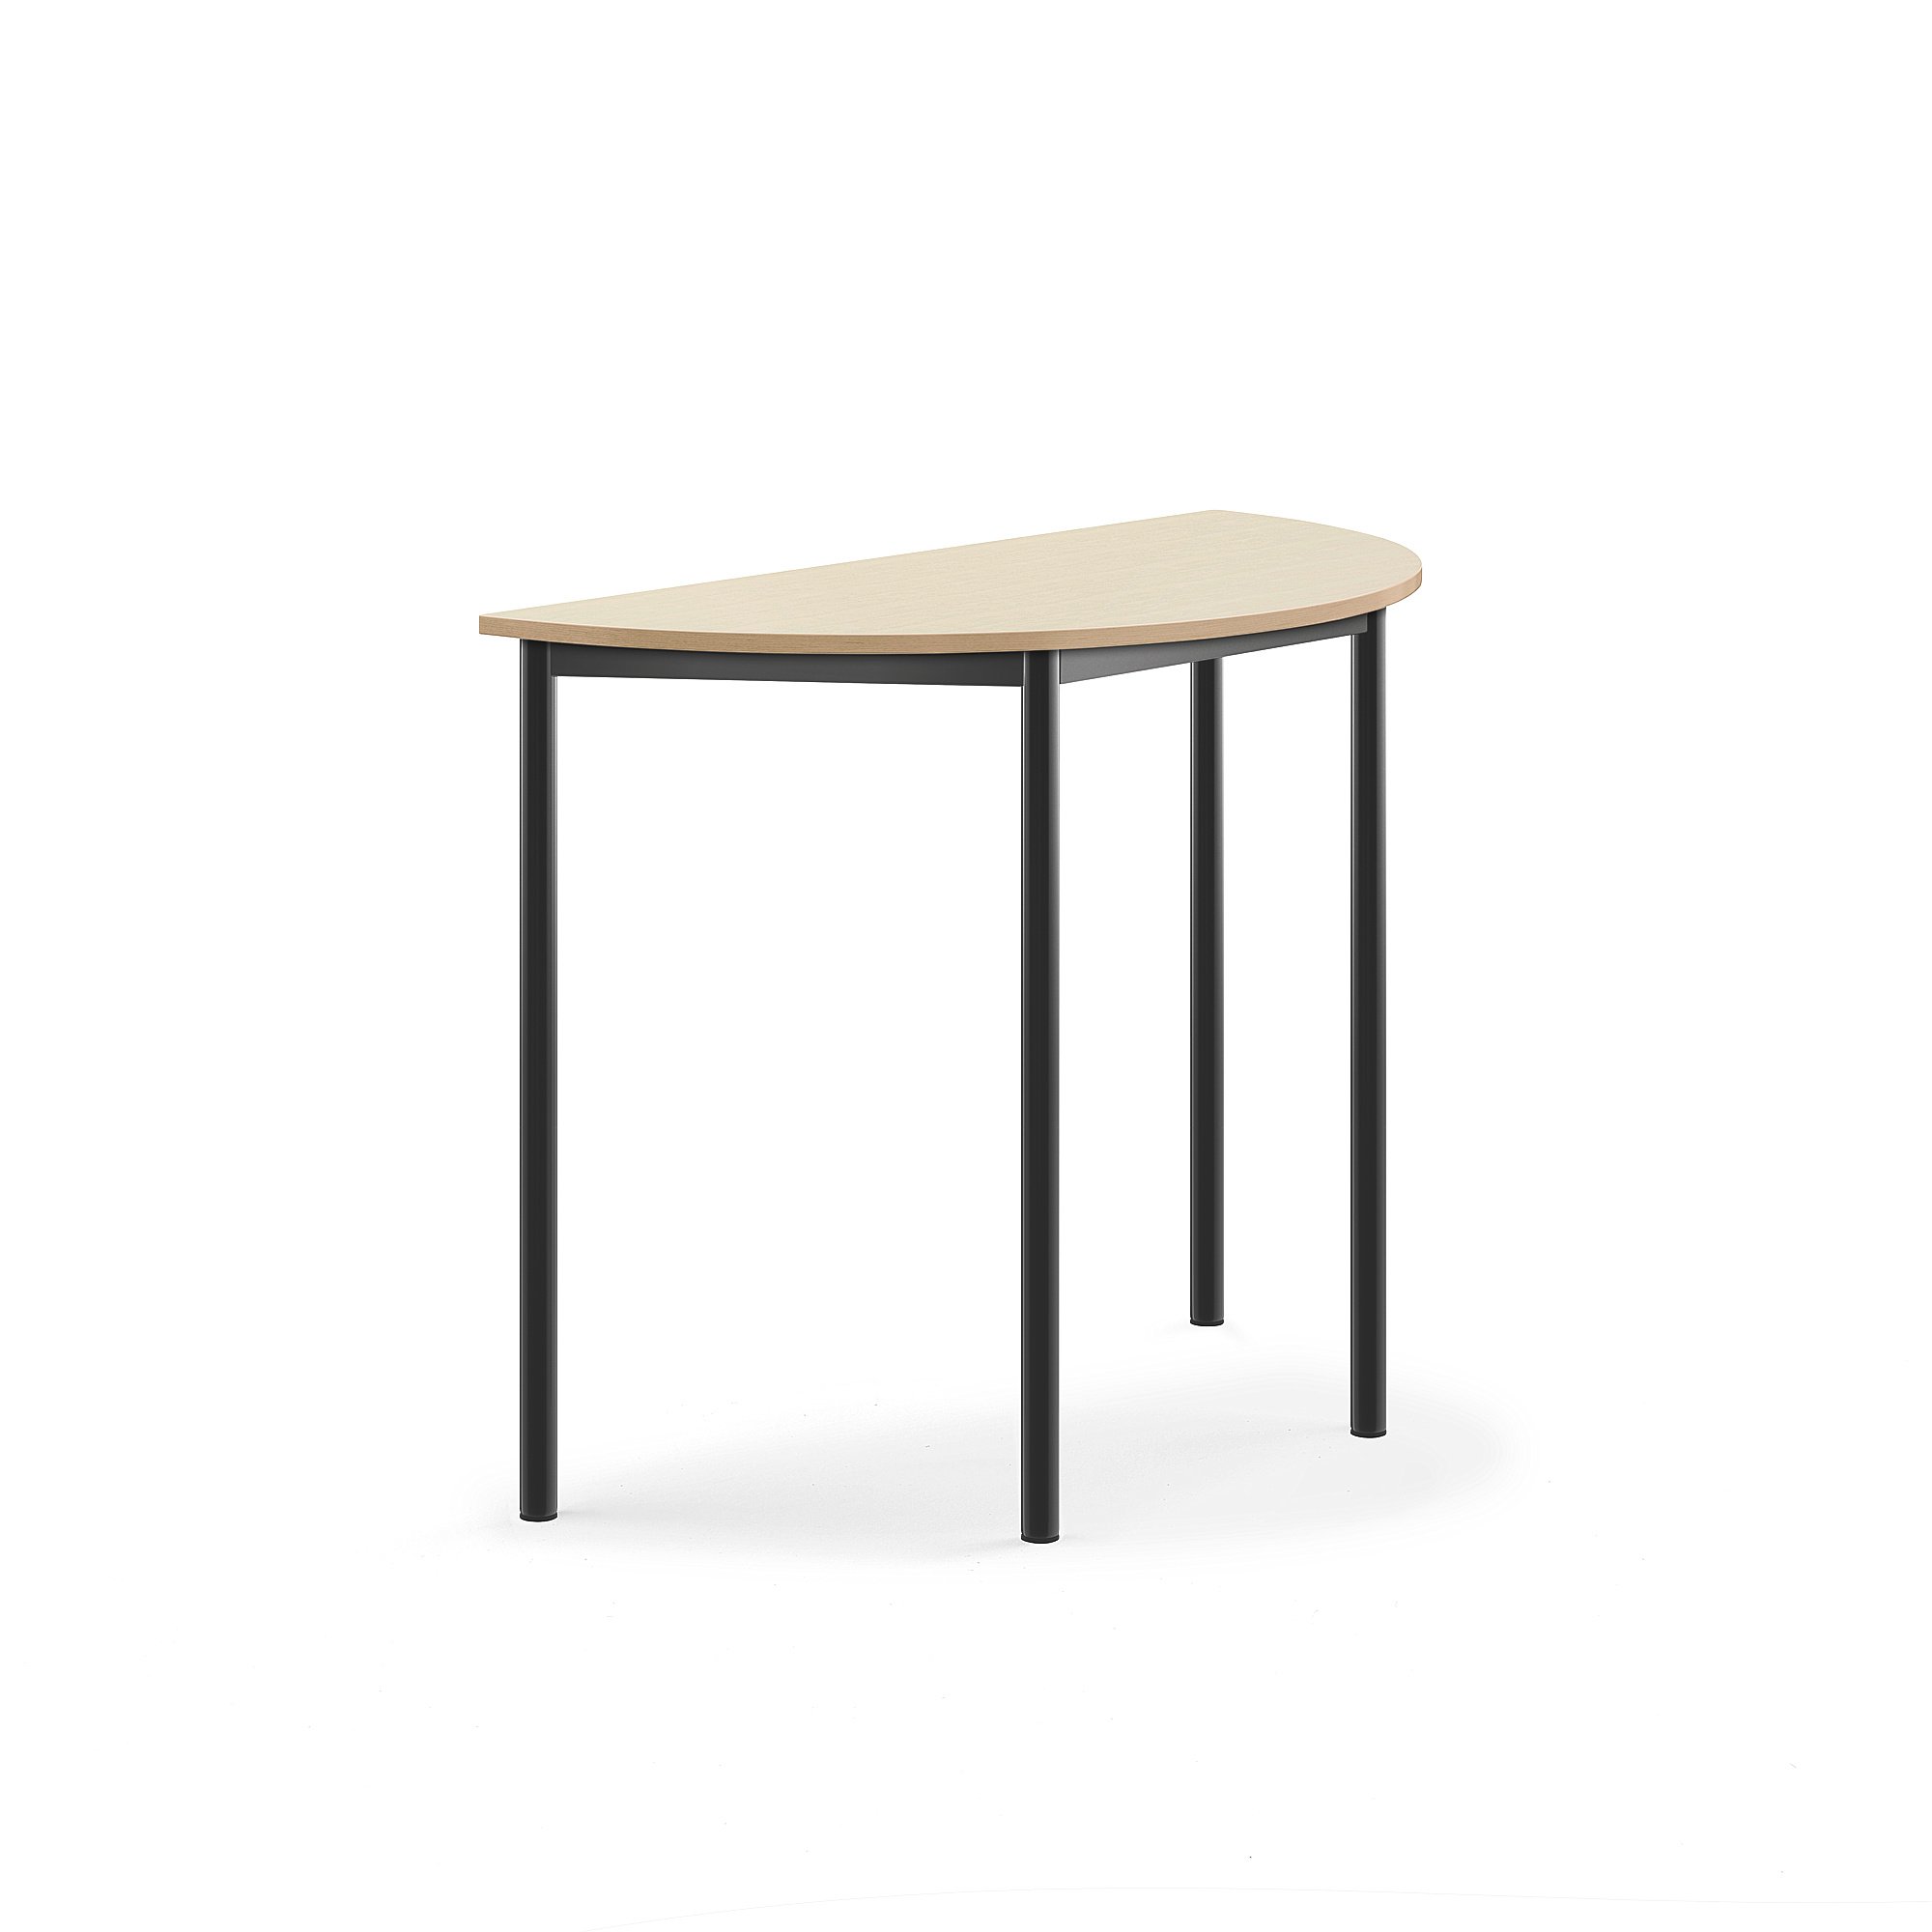 Stůl SONITUS, půlkruh, 1200x600x900 mm, antracitově šedé nohy, HPL deska tlumící hluk, bříza